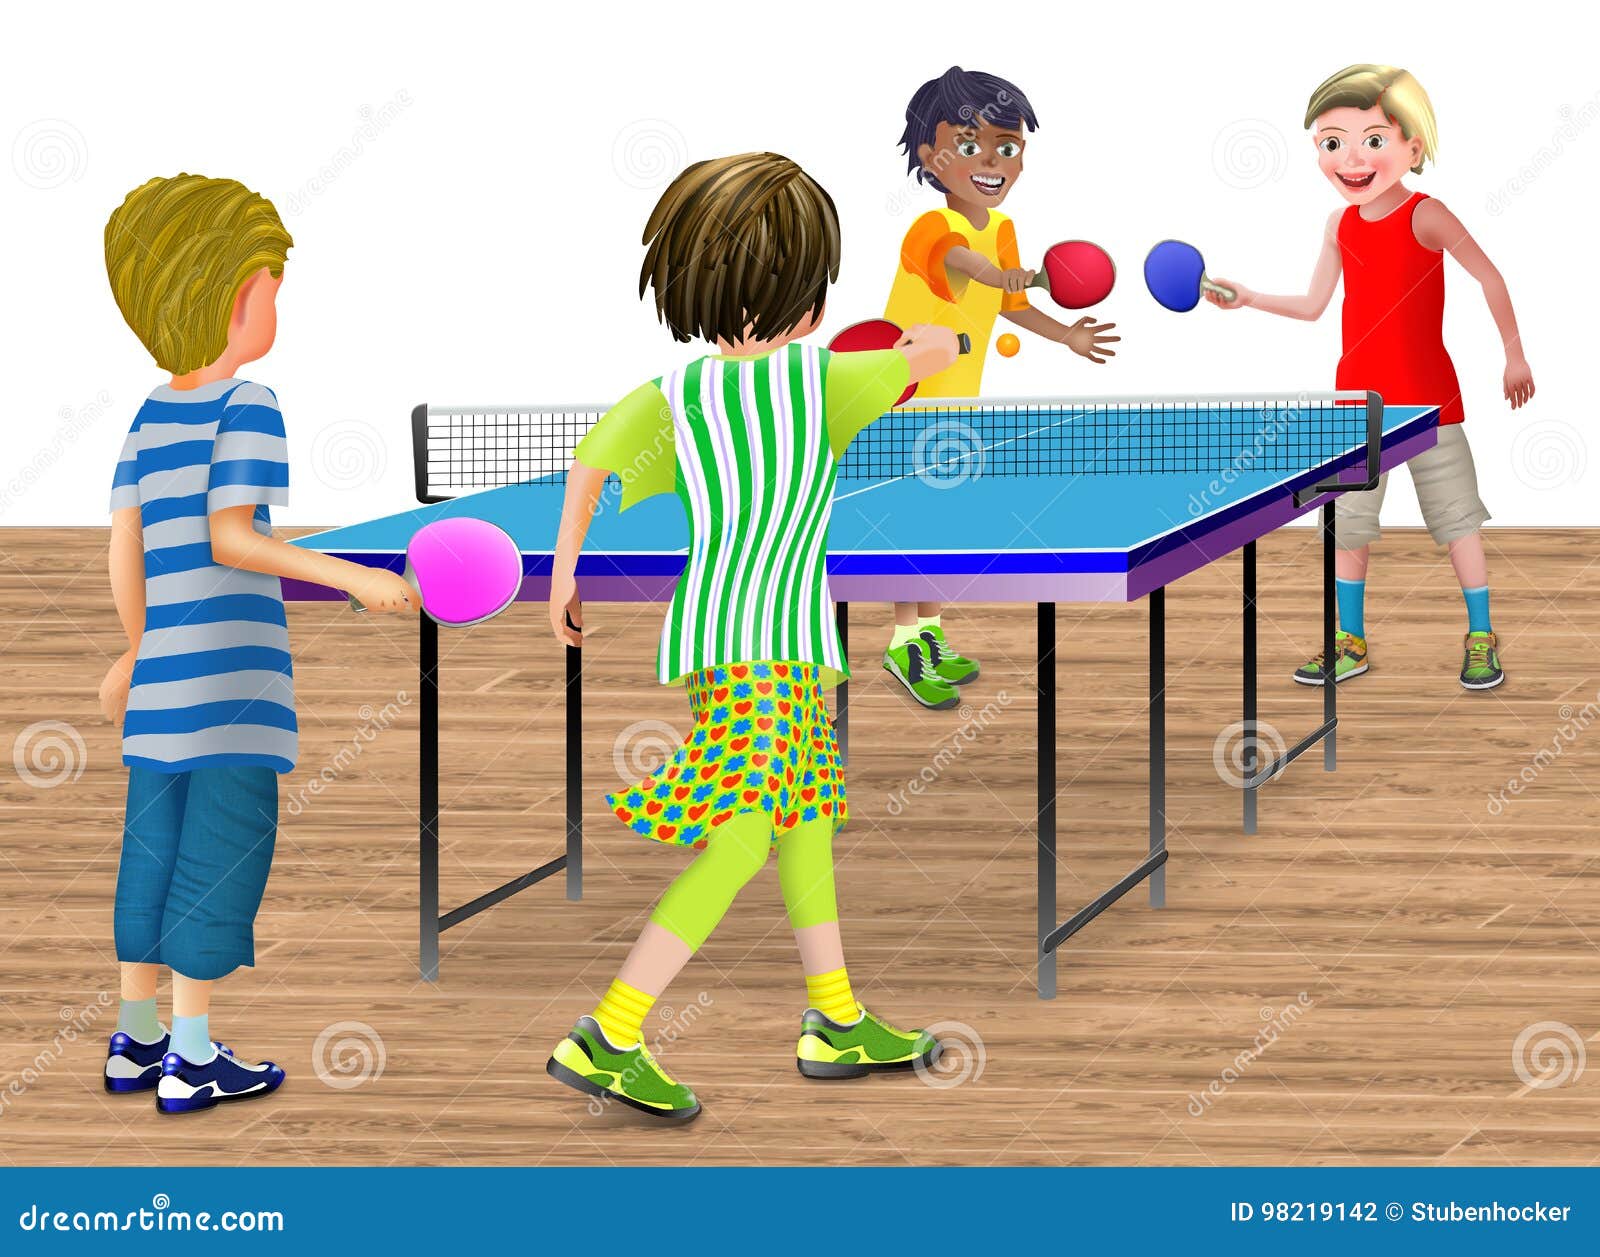 4 Enfants Jouant Un Double Match De Ping-pong Photo stock - Illustration du  rire, illustration: 98219142